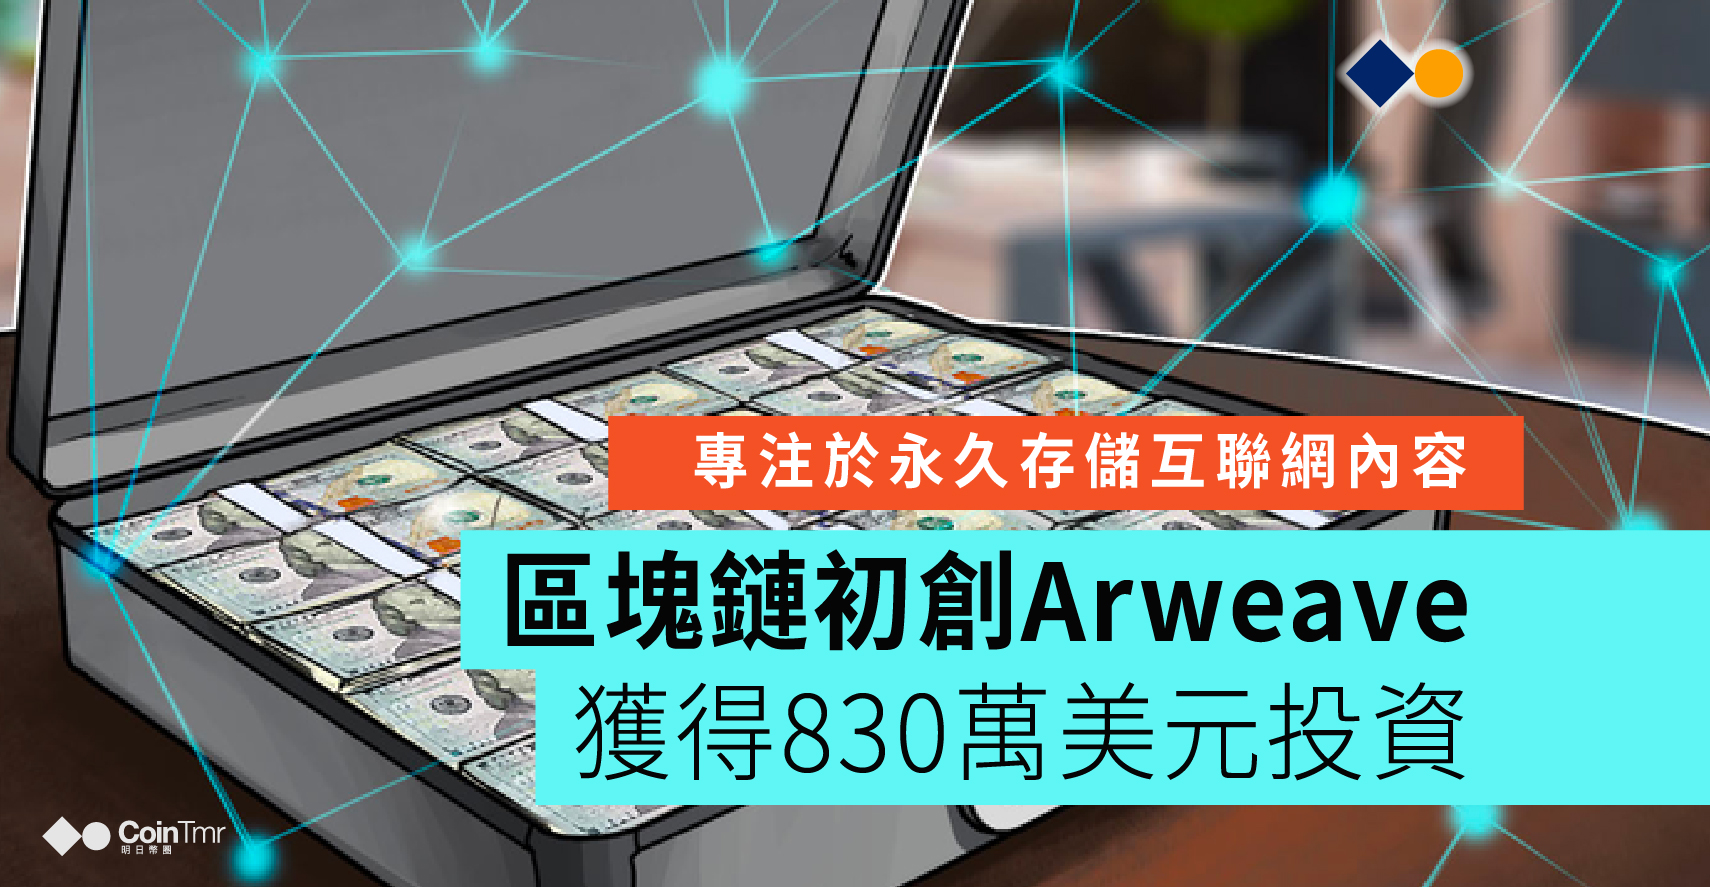 區鏈初創公司Arweave獲得830萬美元投資 - CoinTmr《明日幣圈》